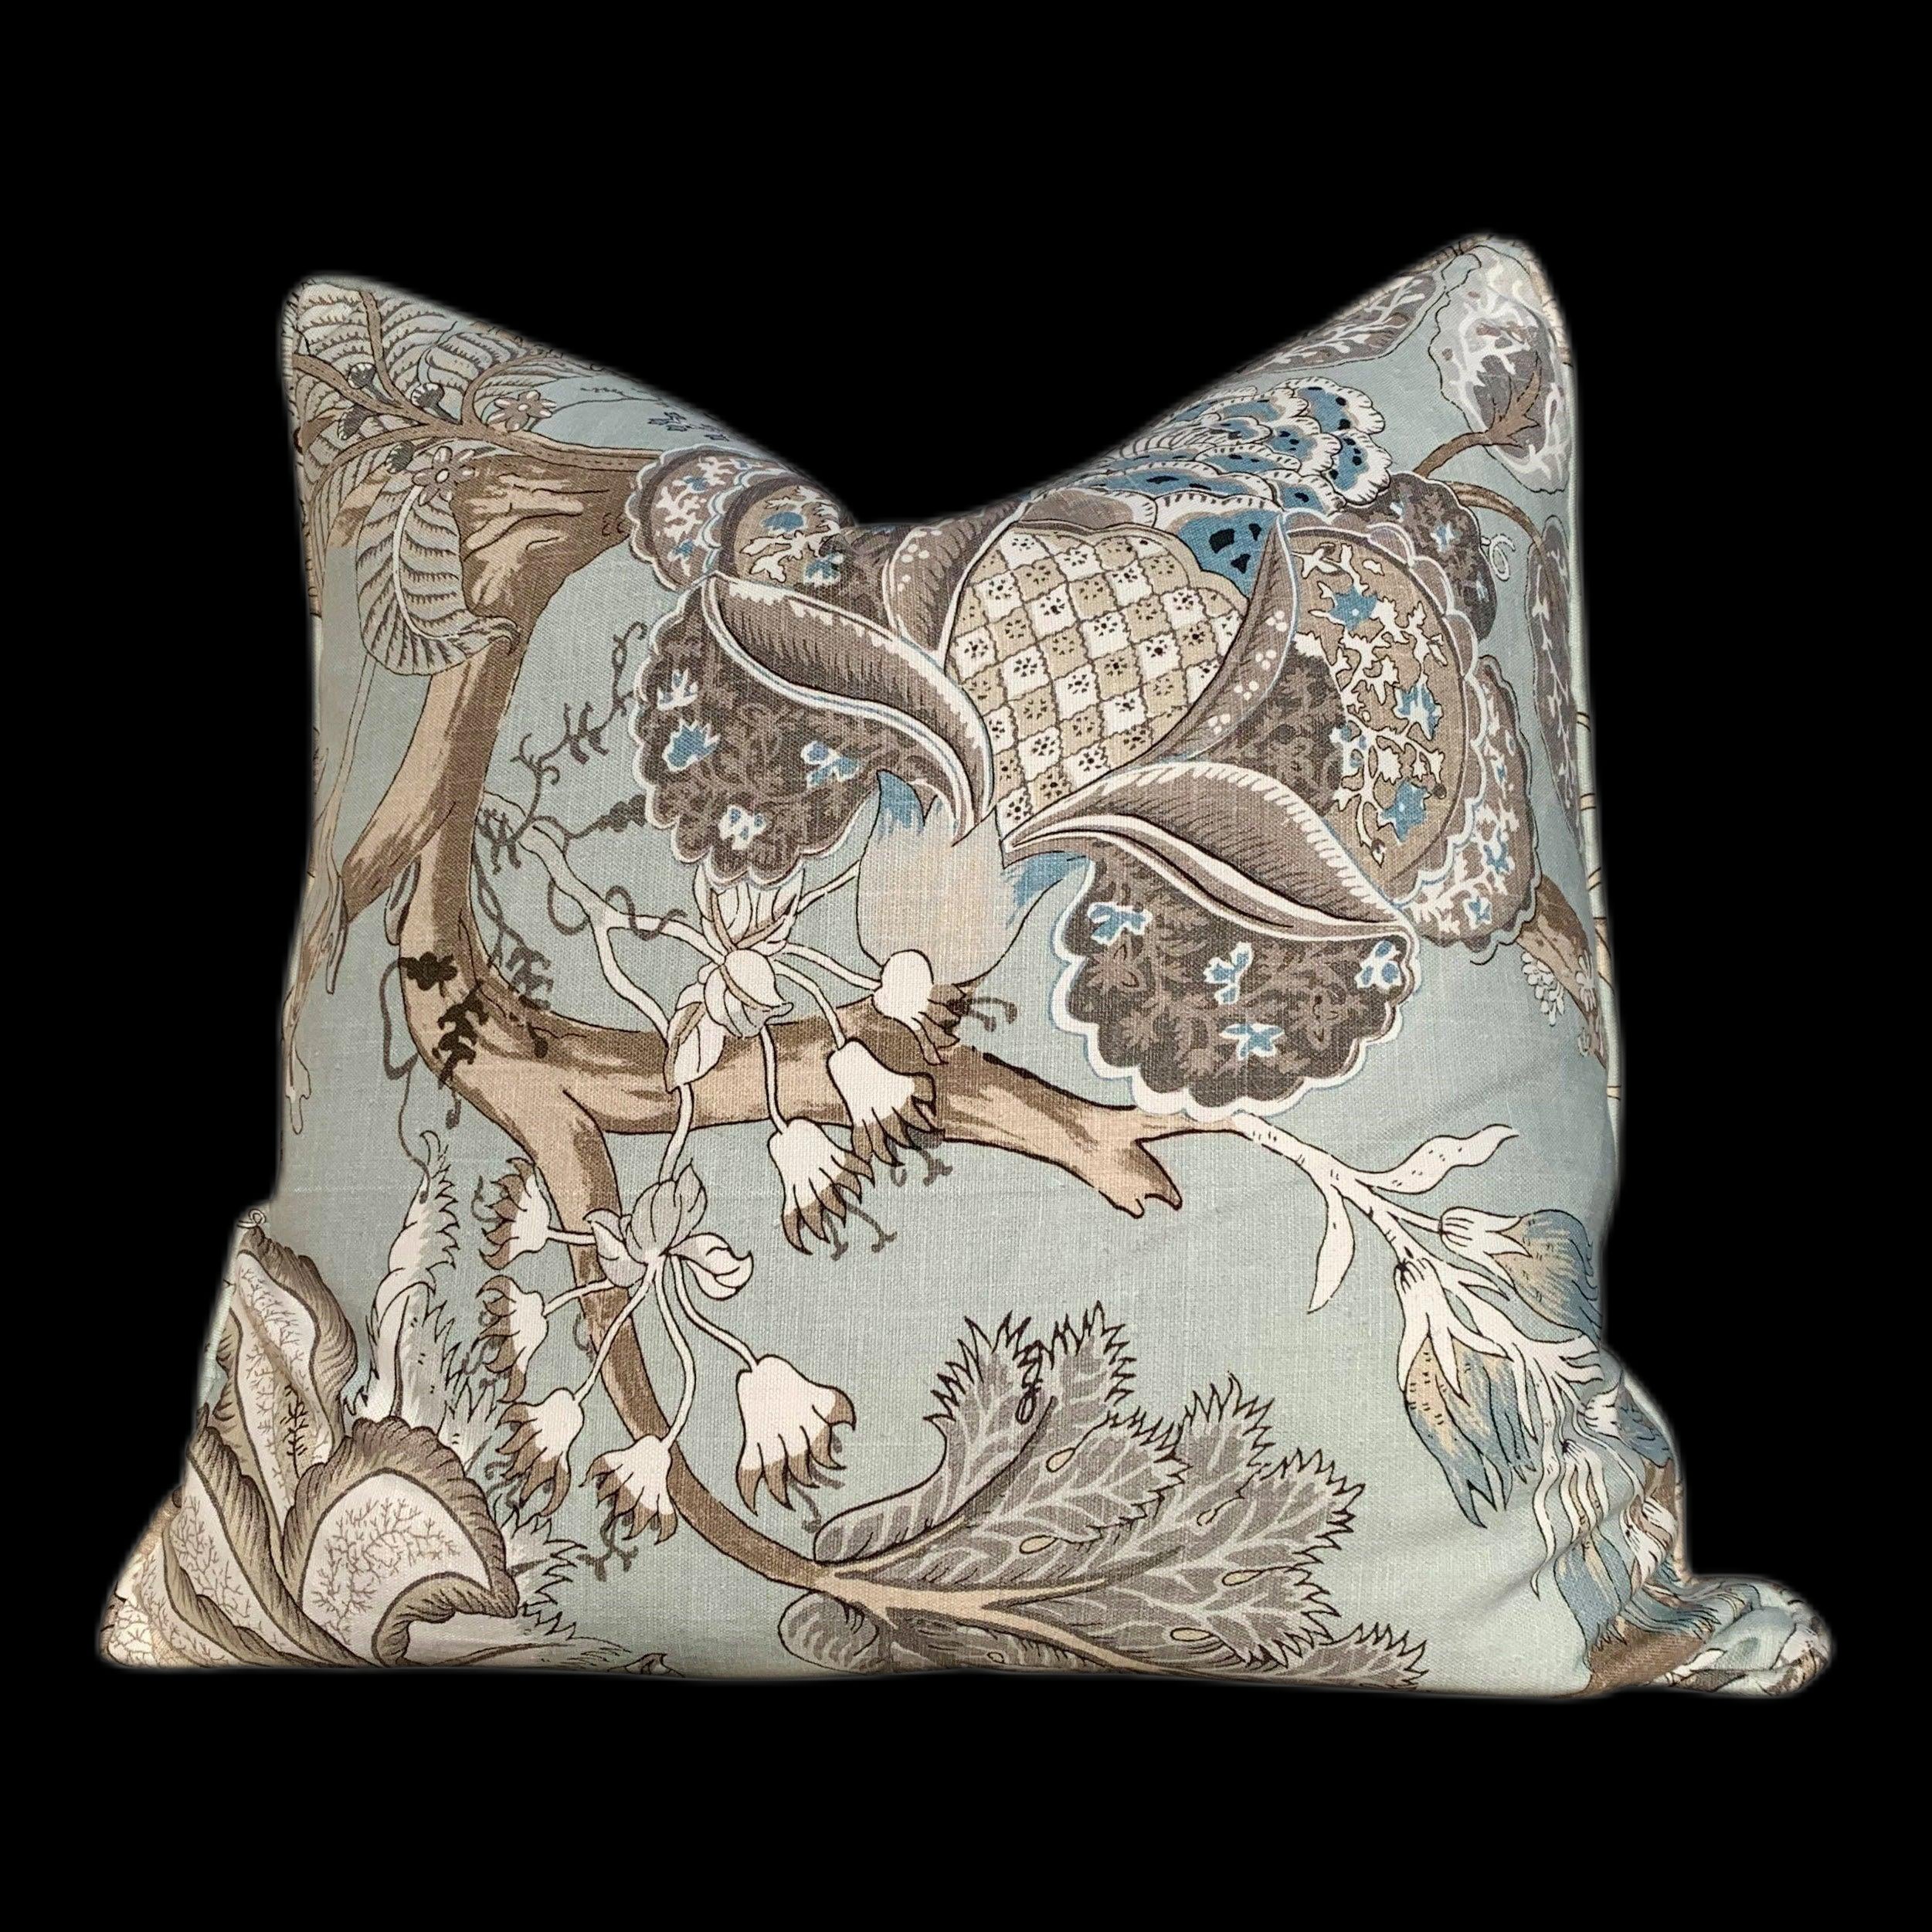 Thibaut Kalamkari Pillow in Aqua Blue. Lumbar Pillow. Designer pillows, decorative pillow cover, accent throw